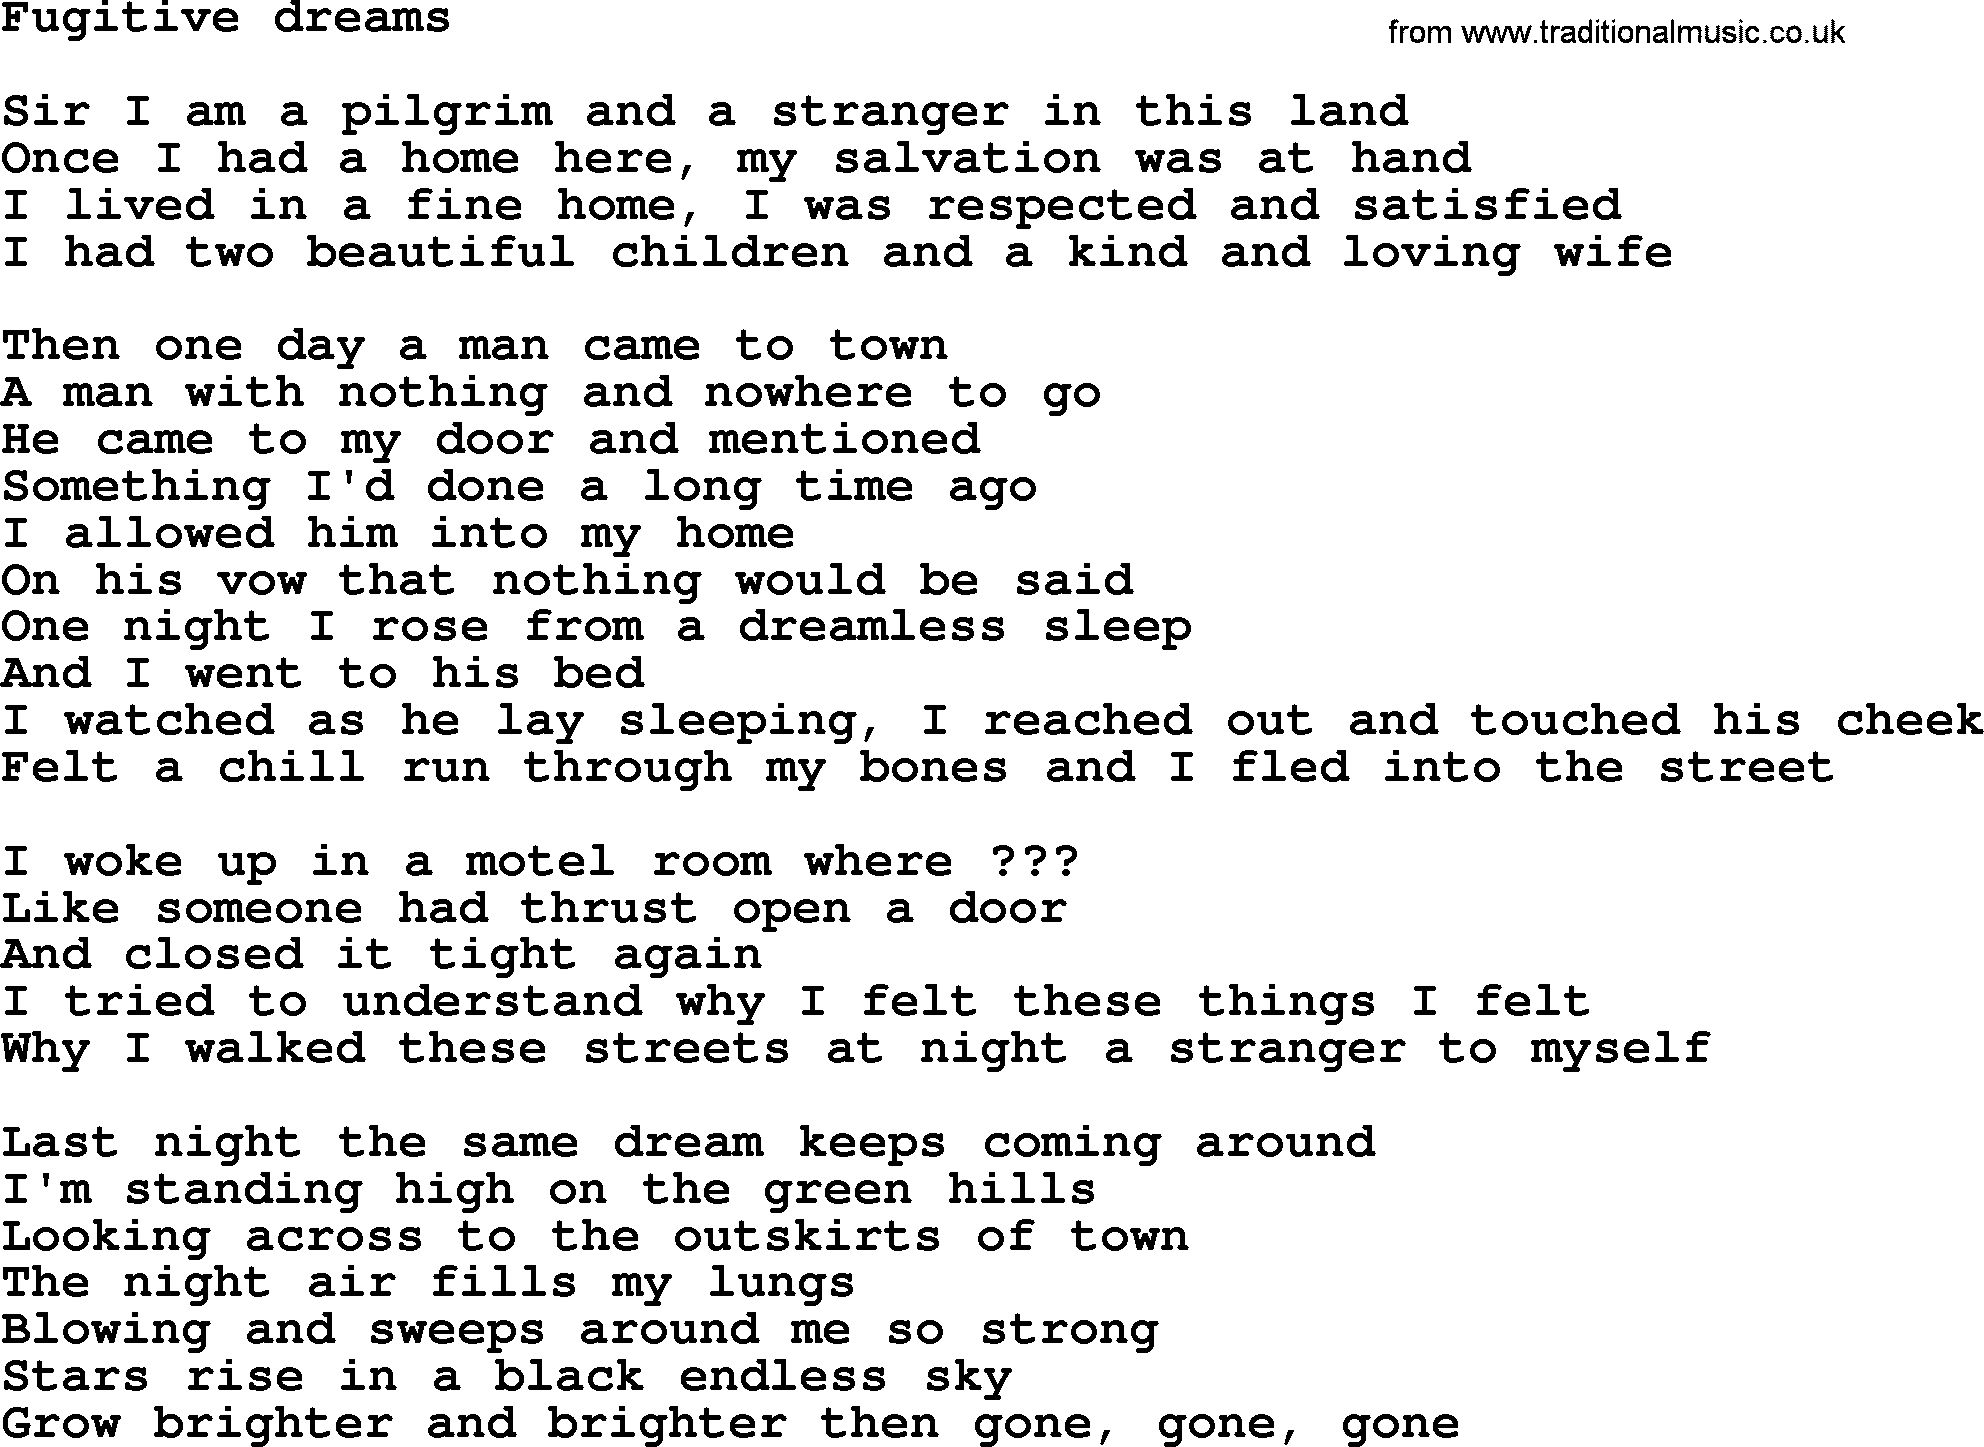 Bruce Springsteen song: Fugitive Dreams lyrics